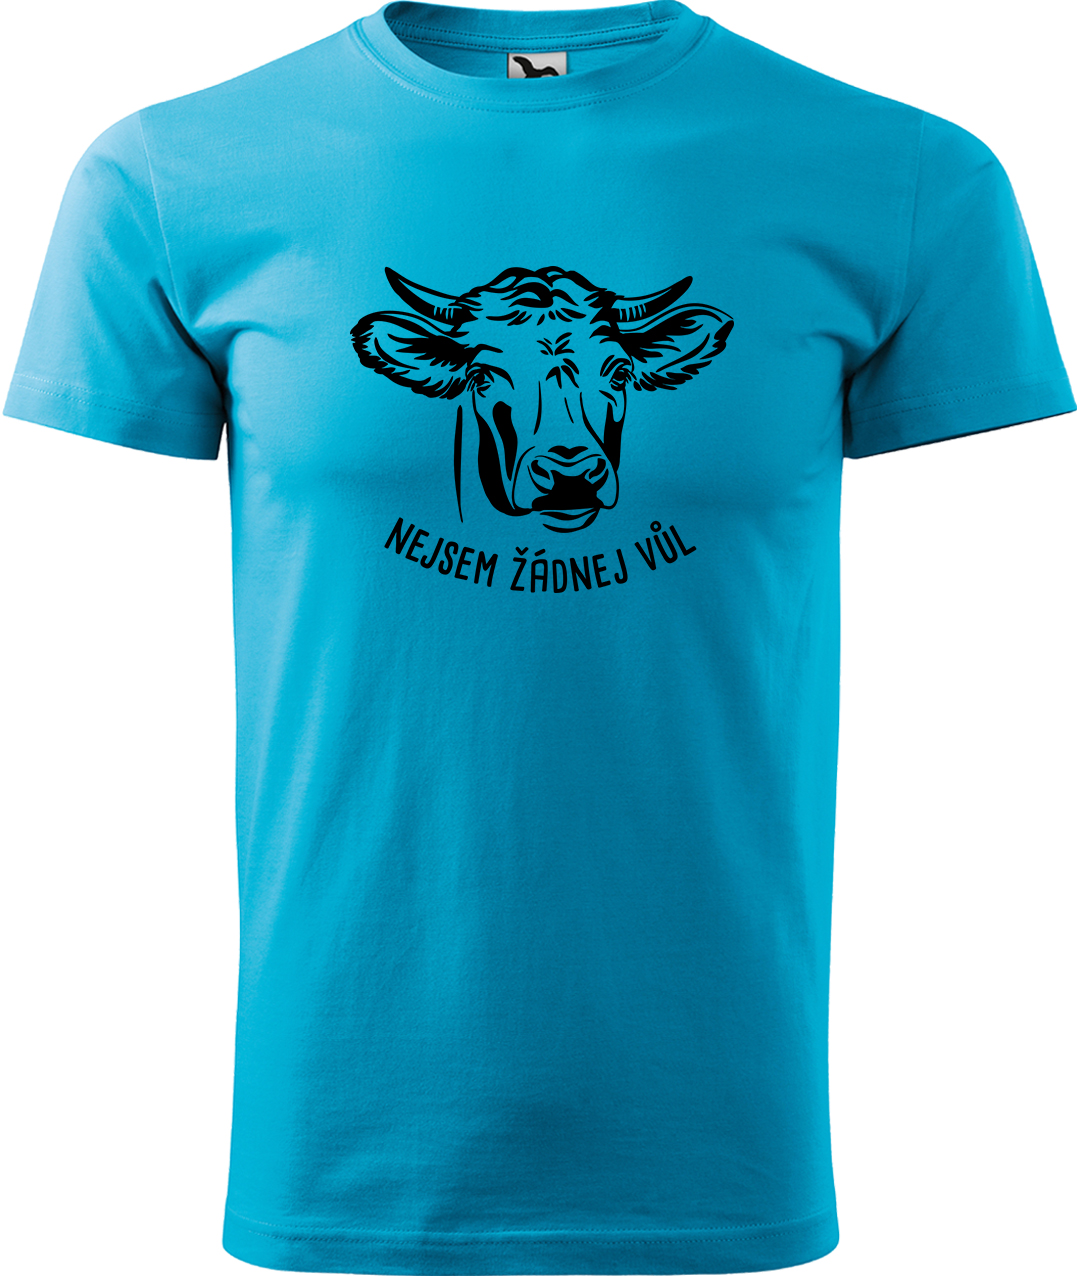 Pánské tričko s krávou - Nejsem žádnej vůl Velikost: 3XL, Barva: Tyrkysová (44), Střih: pánský